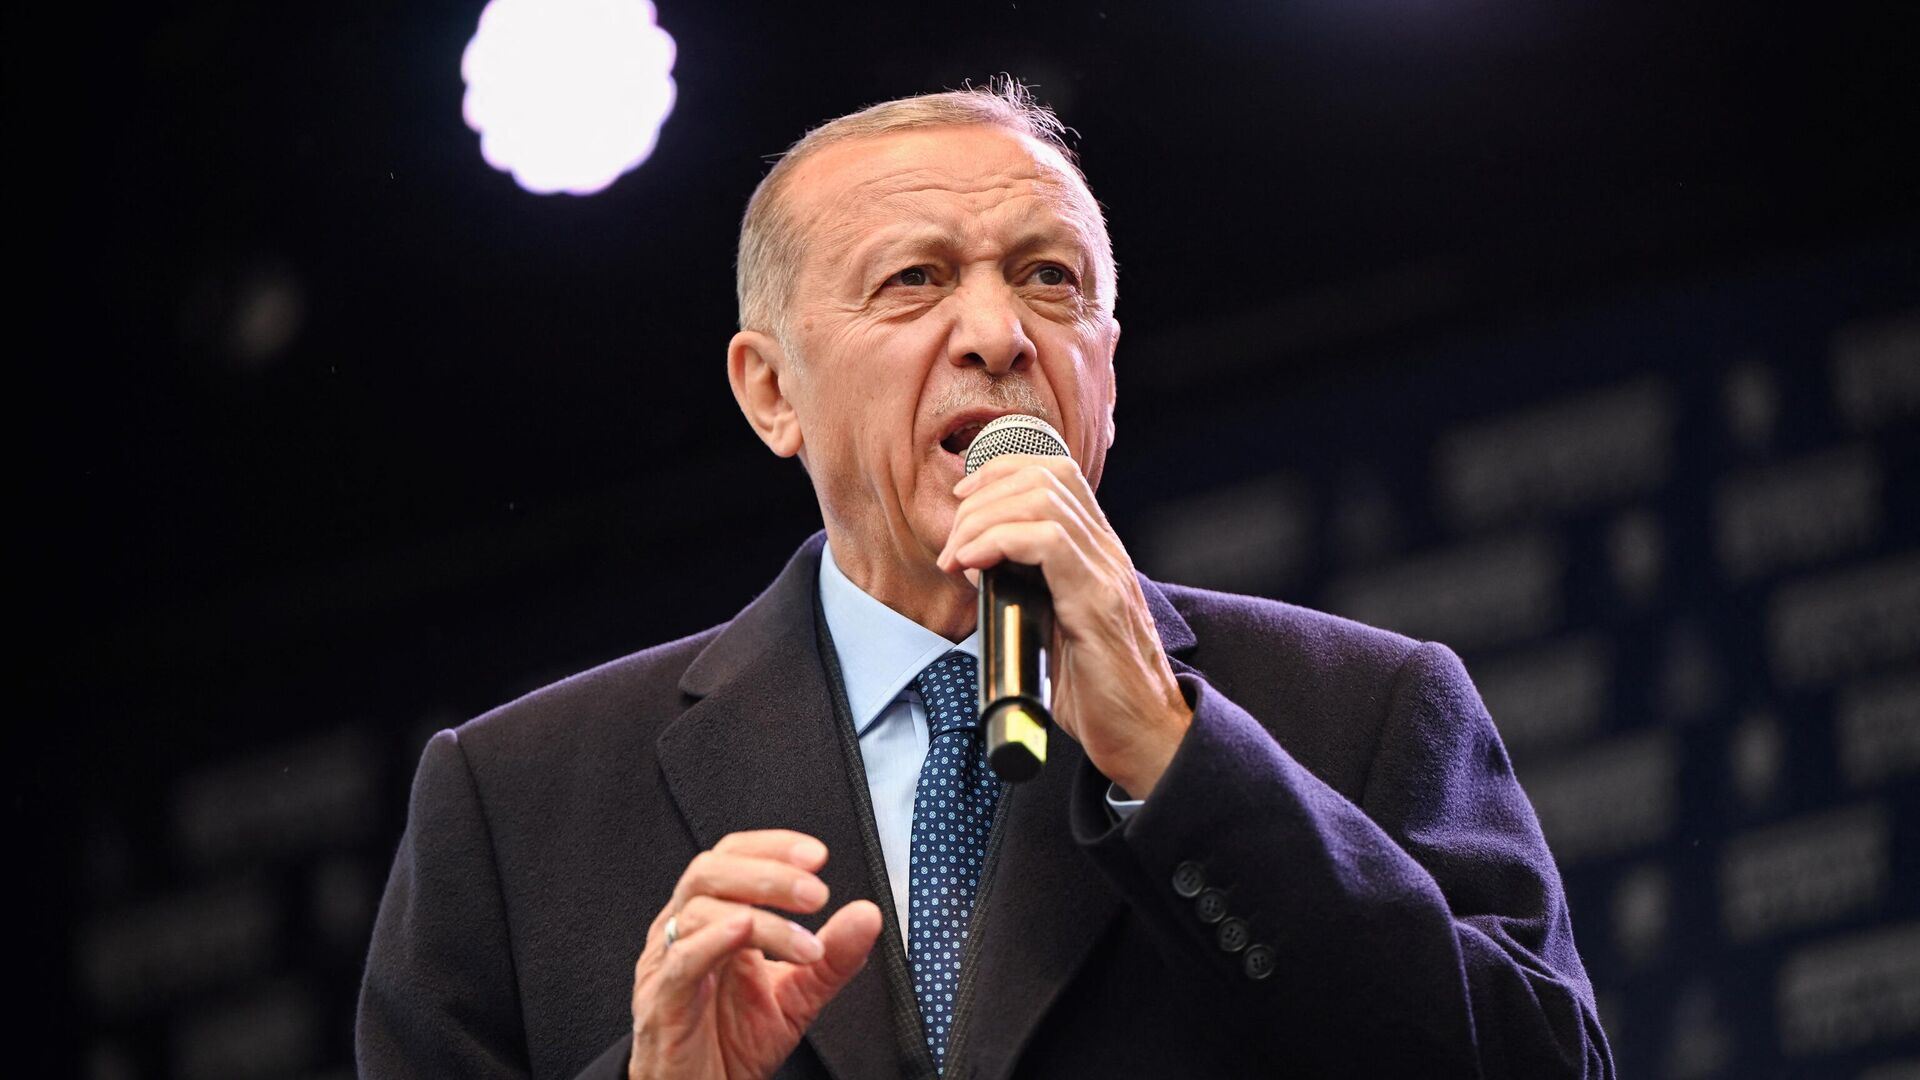 كيف علّق قادة العالم على فوز أردوغان؟
